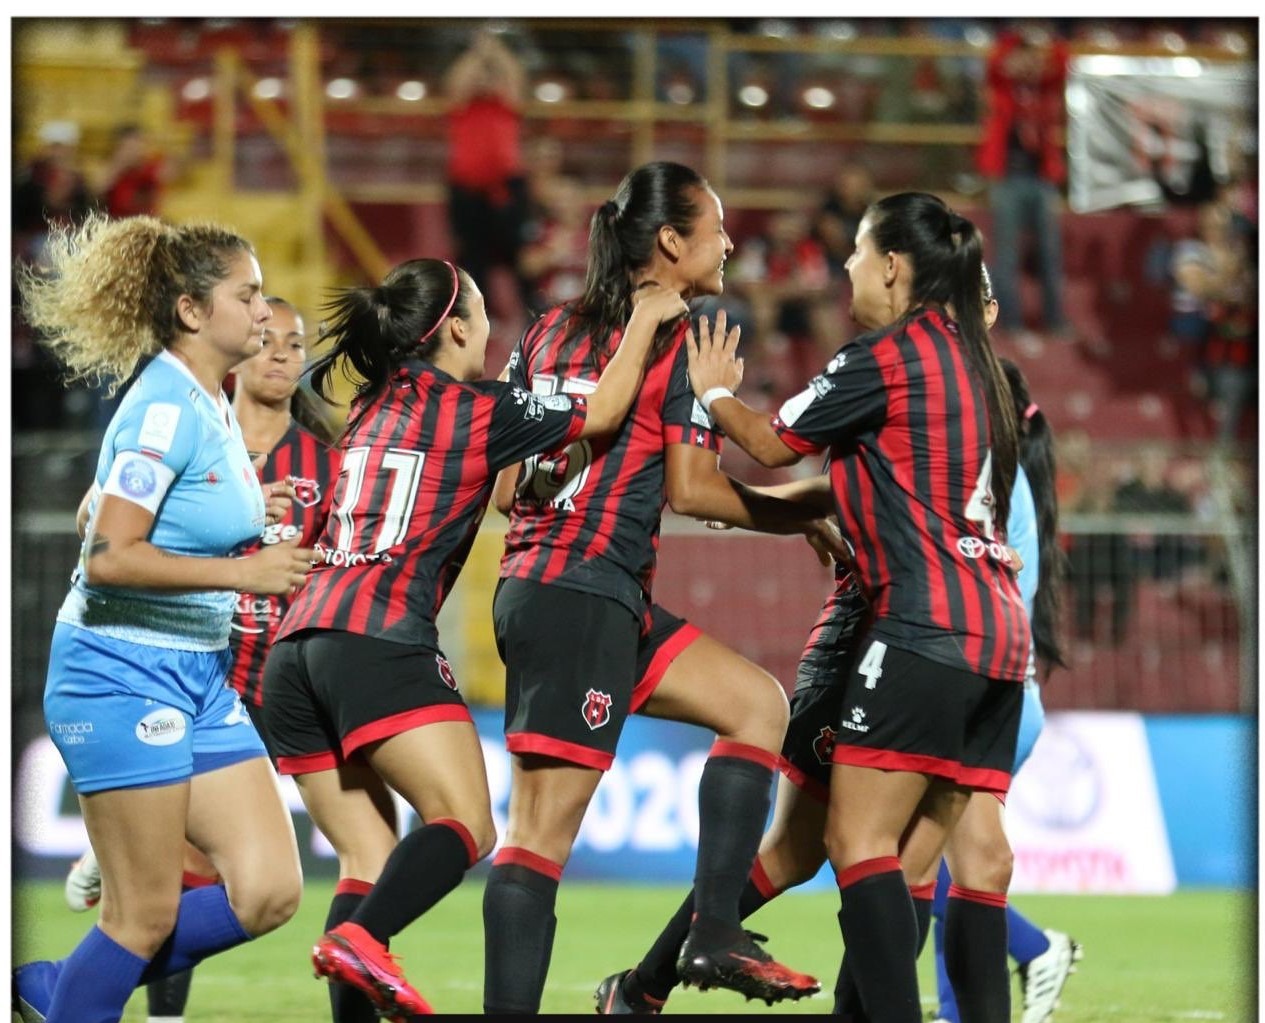 La Liga saldó su debut en Primera Femenina con victoria 2-0 ante Pococí